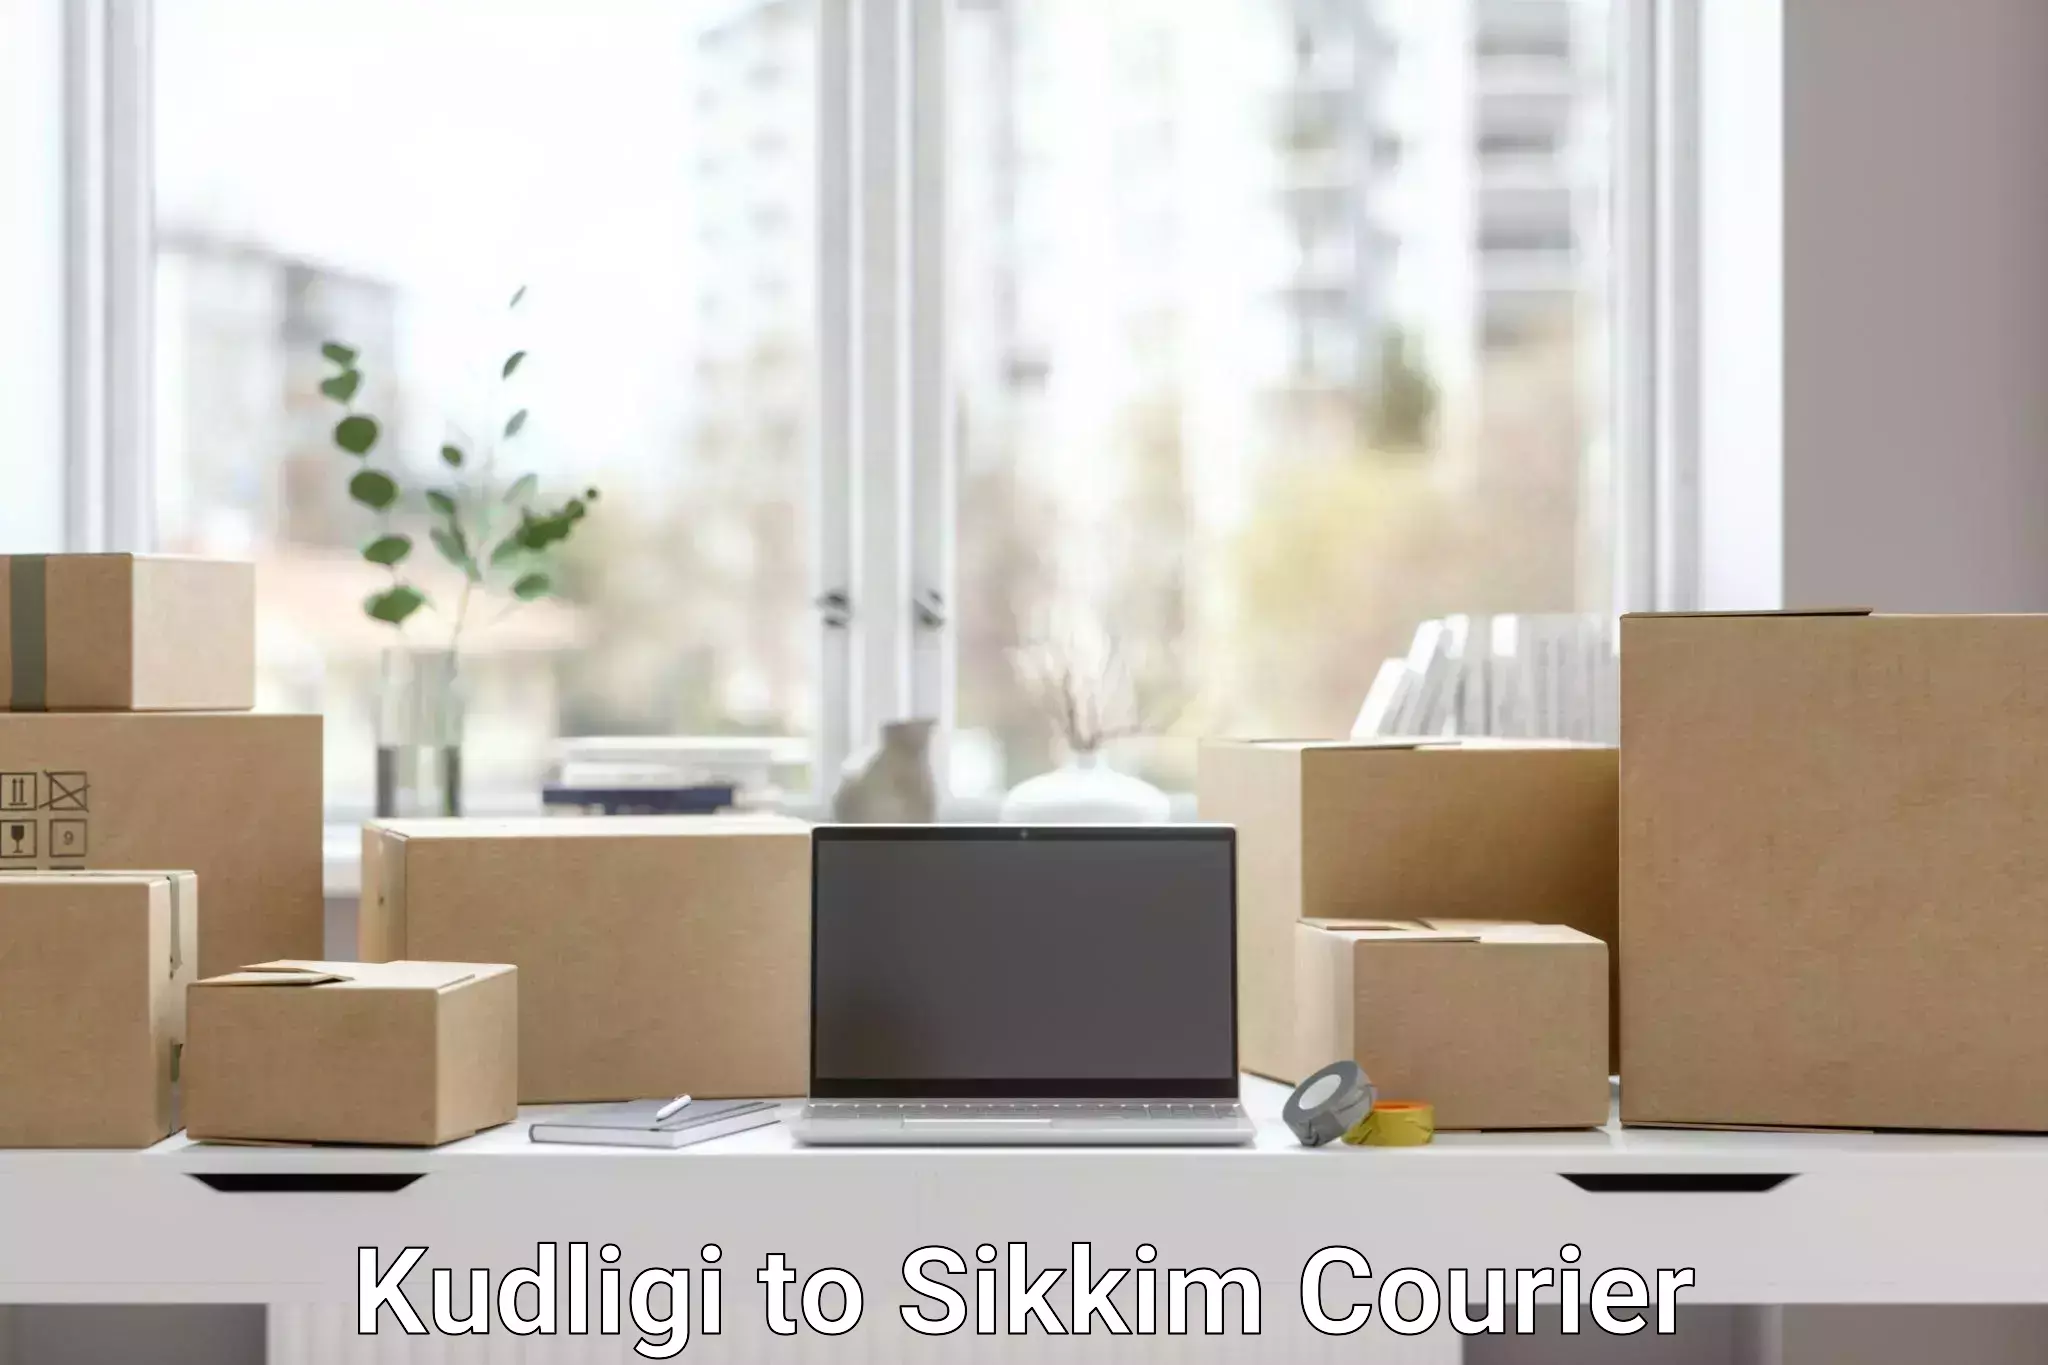 Nationwide shipping coverage Kudligi to West Sikkim